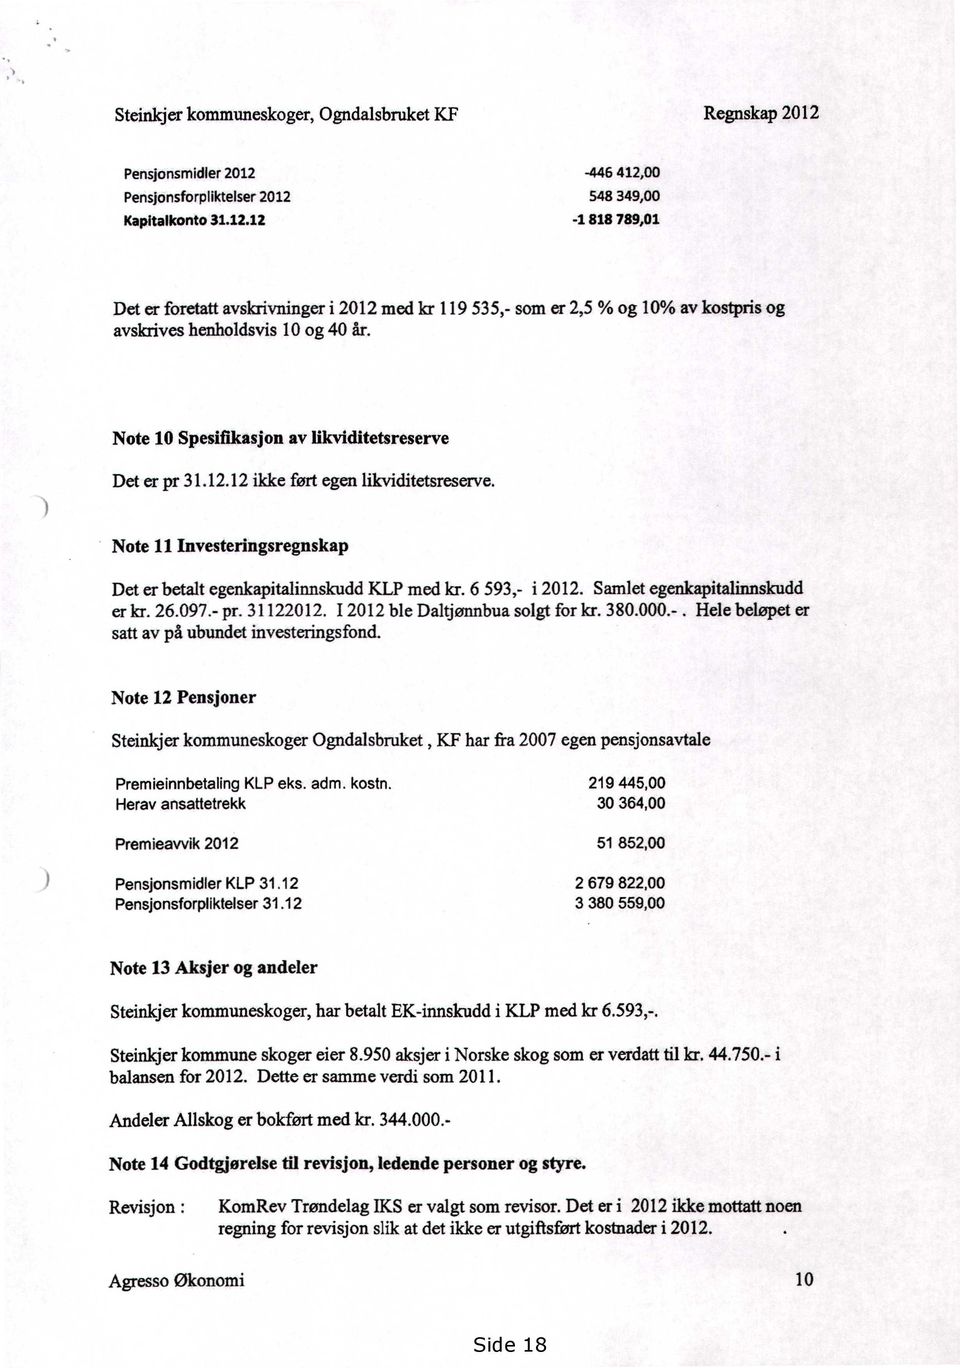 Samlet egenkapitalinnskudd er kr. 26.097.- pr. 31122012. 12012 ble Daltjønnbua solgt for kr. 380.000.-. Hele beløpet er satt av på ubundet investeringsfond.